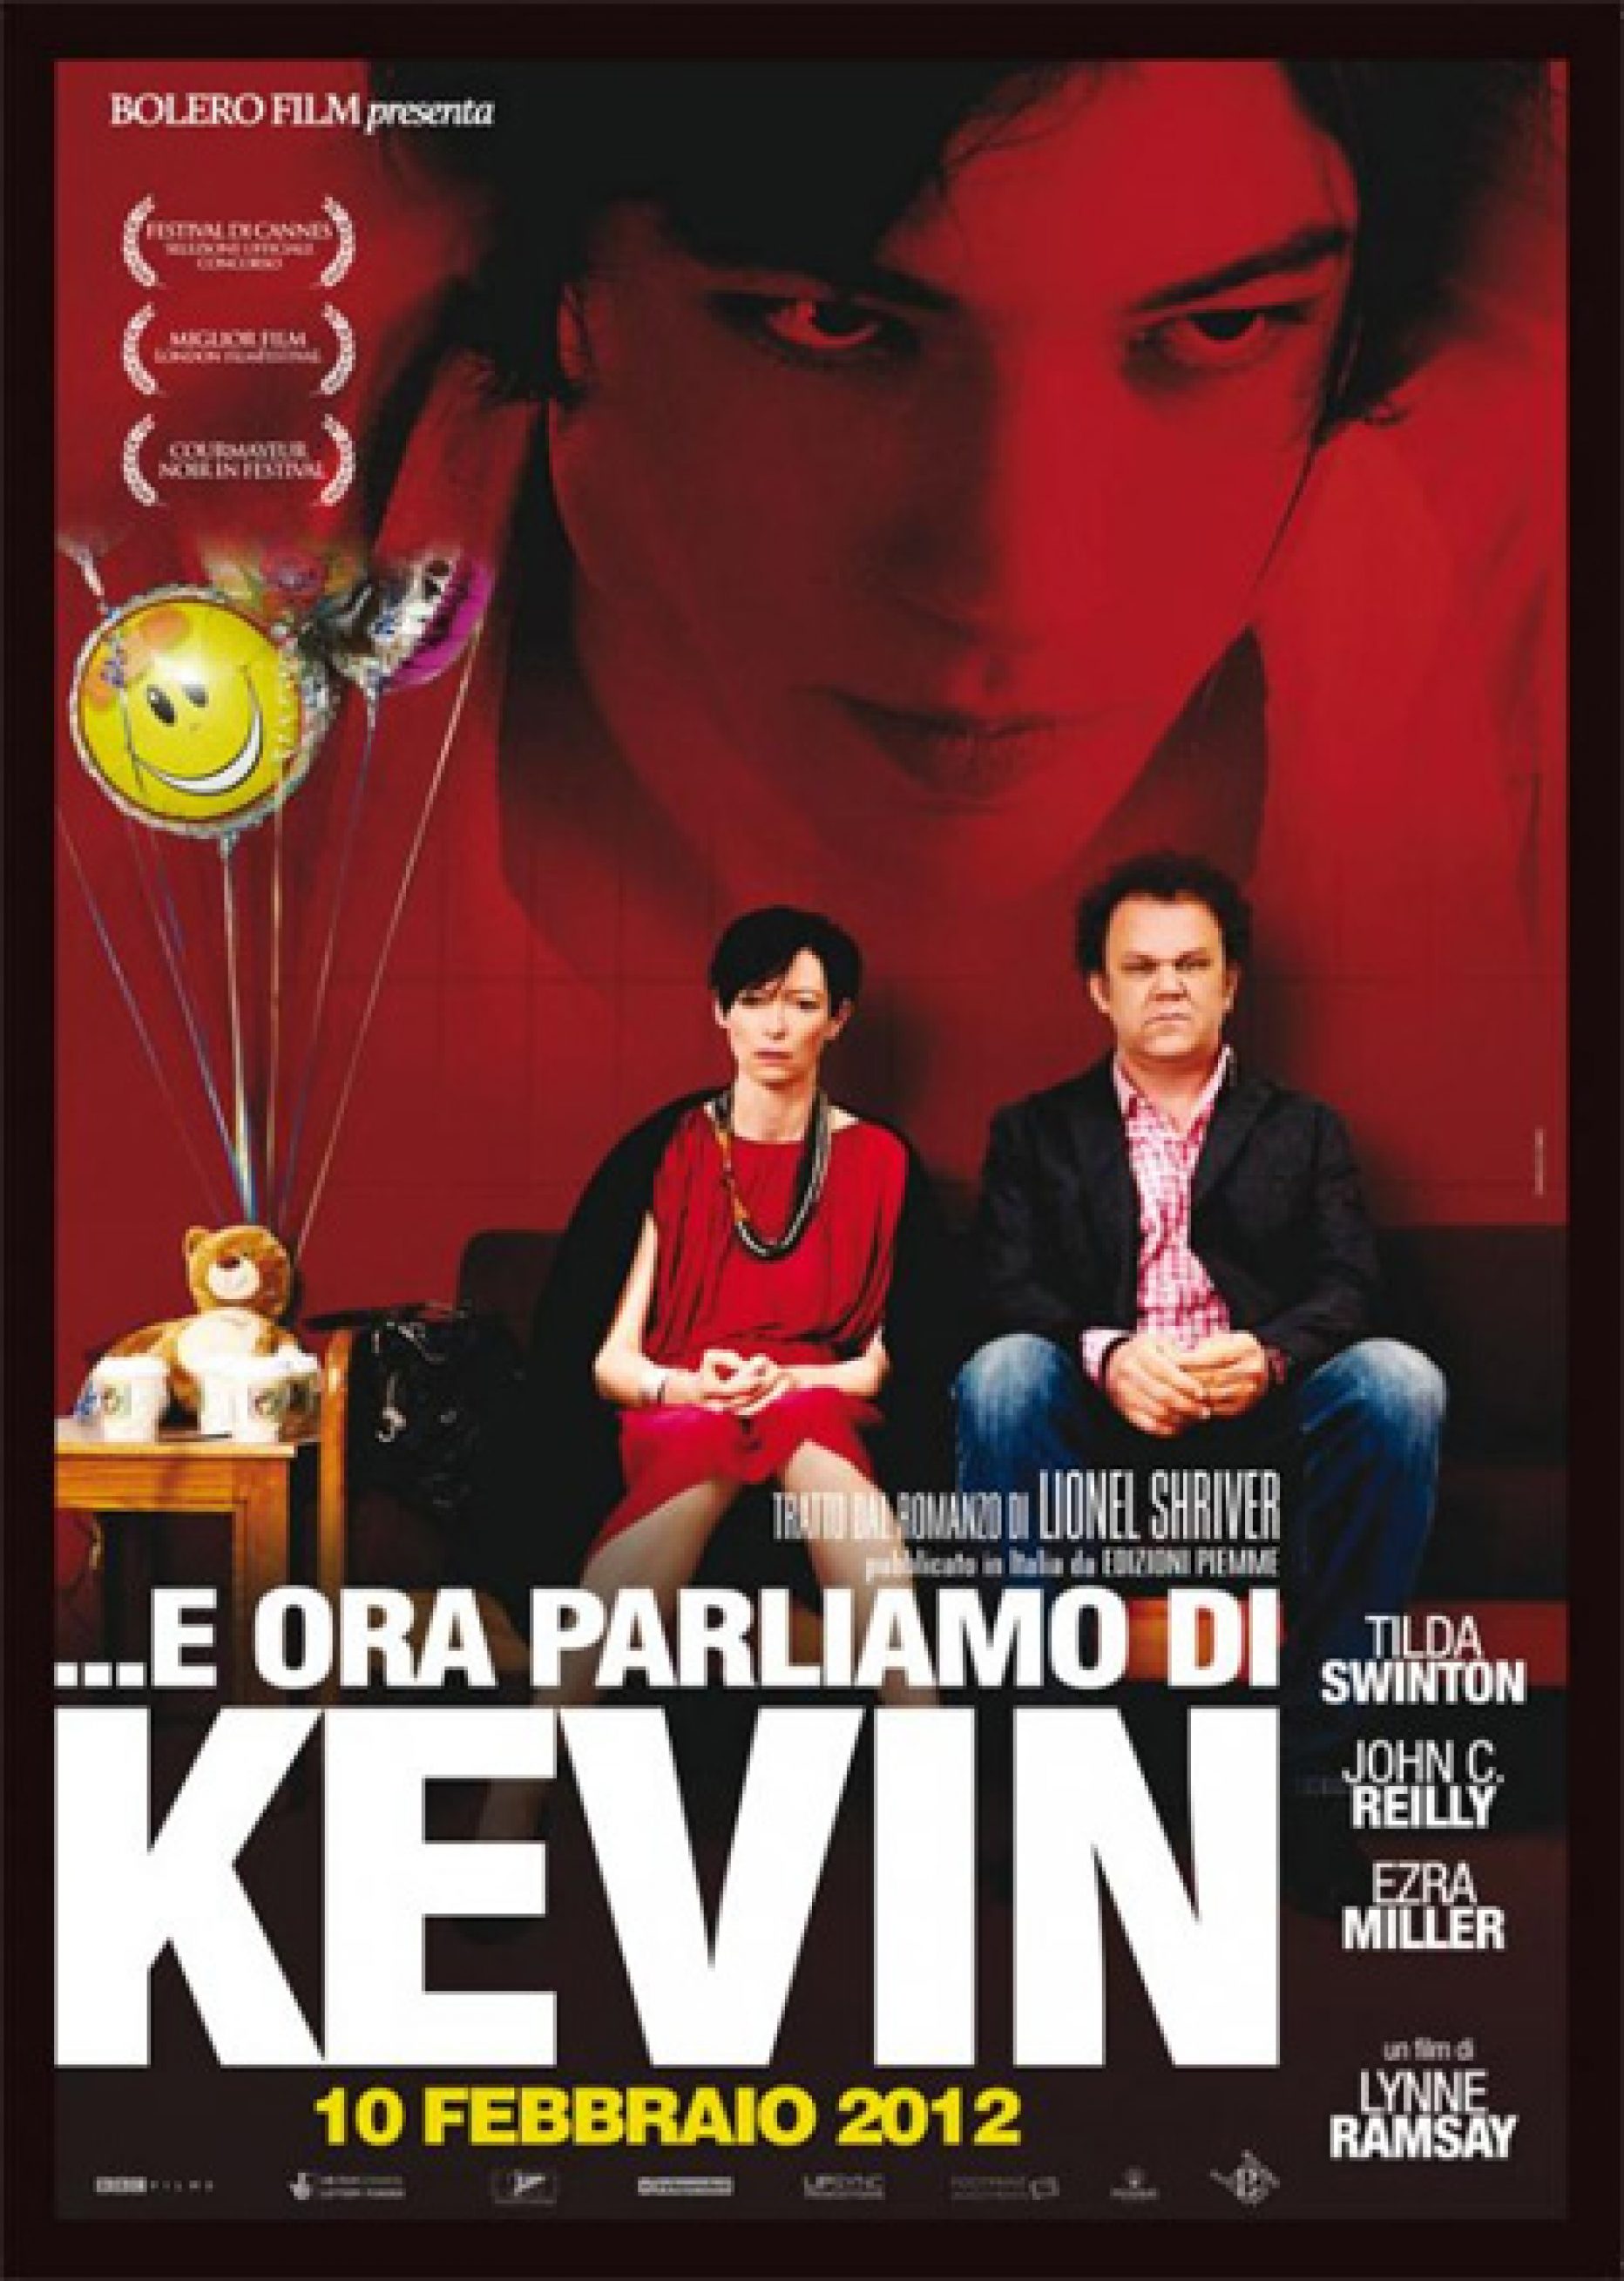 E ora parliamo di Kevin (Lynne Ramsay, 2011)